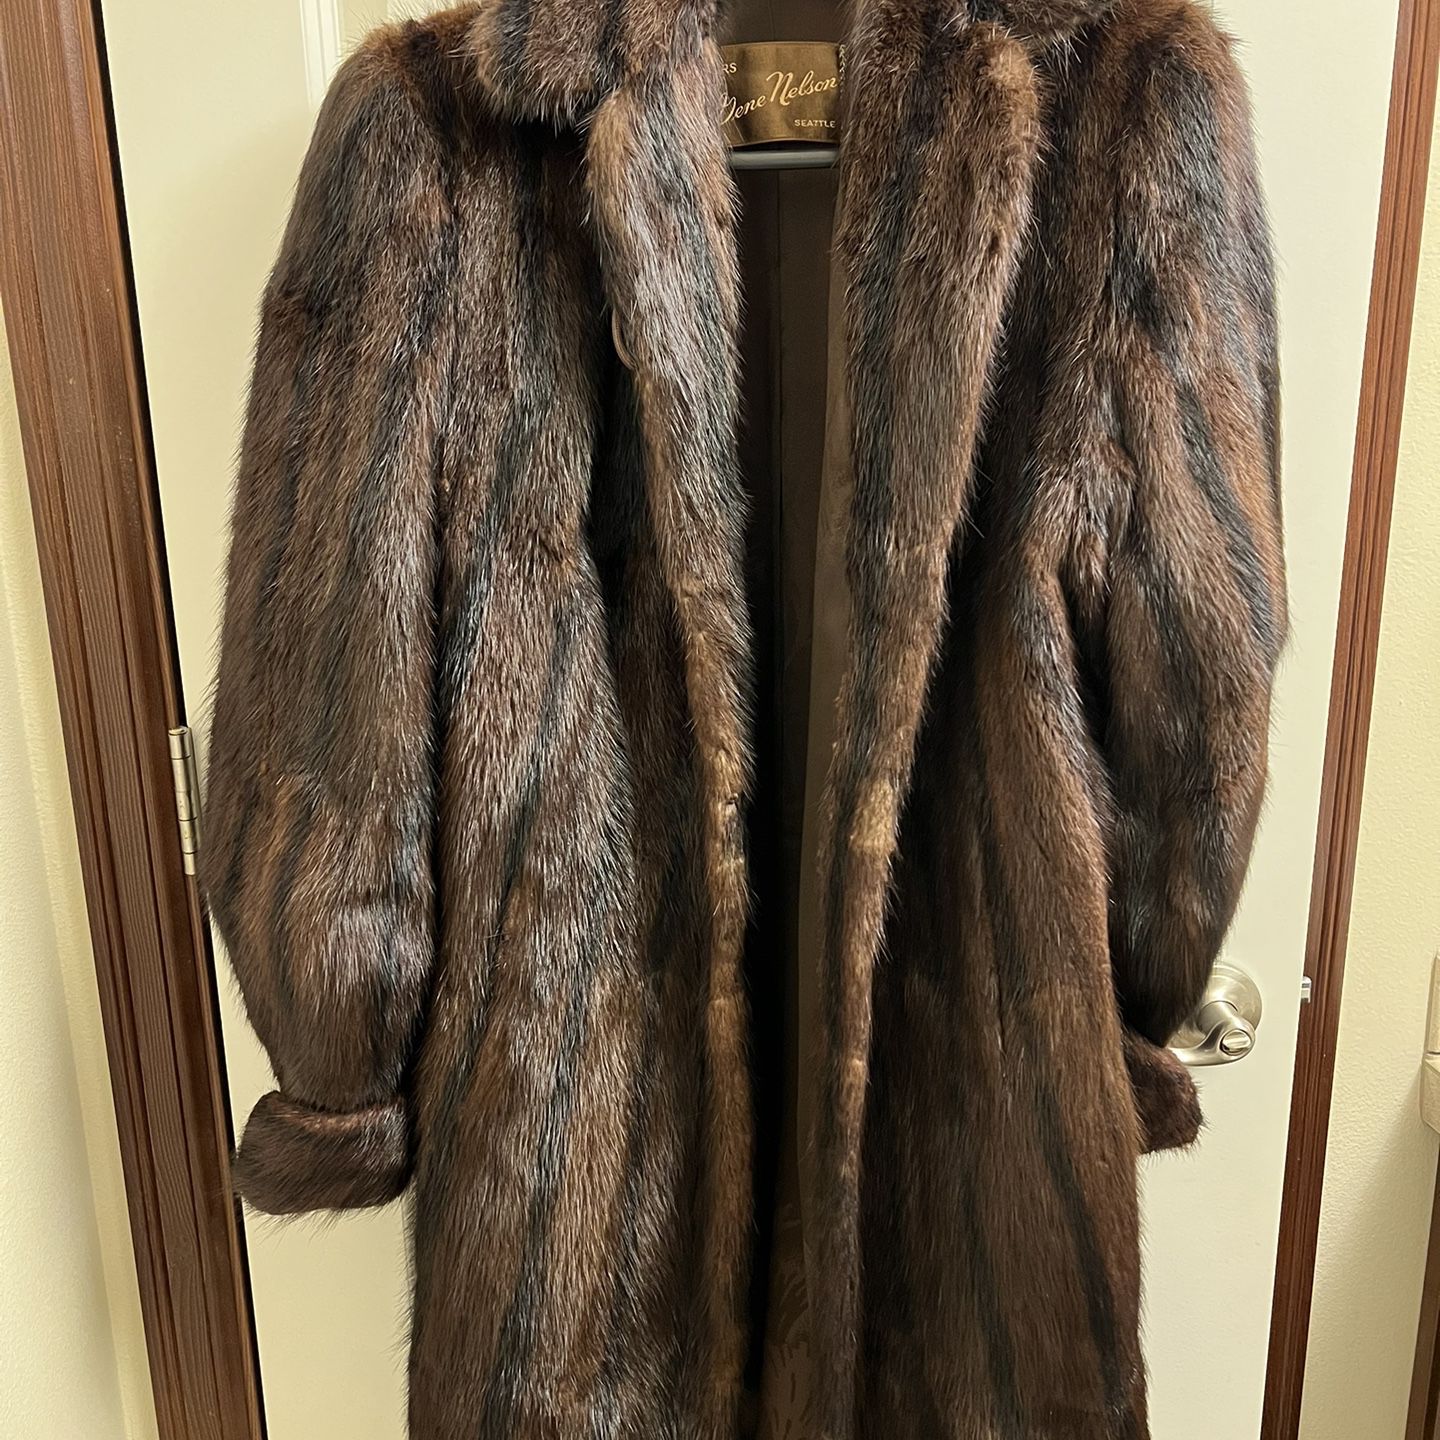 Furs by Gene Nelson, Seattle, Women's below knee length Mink Fur Coat in Brown. It is gorgeous!